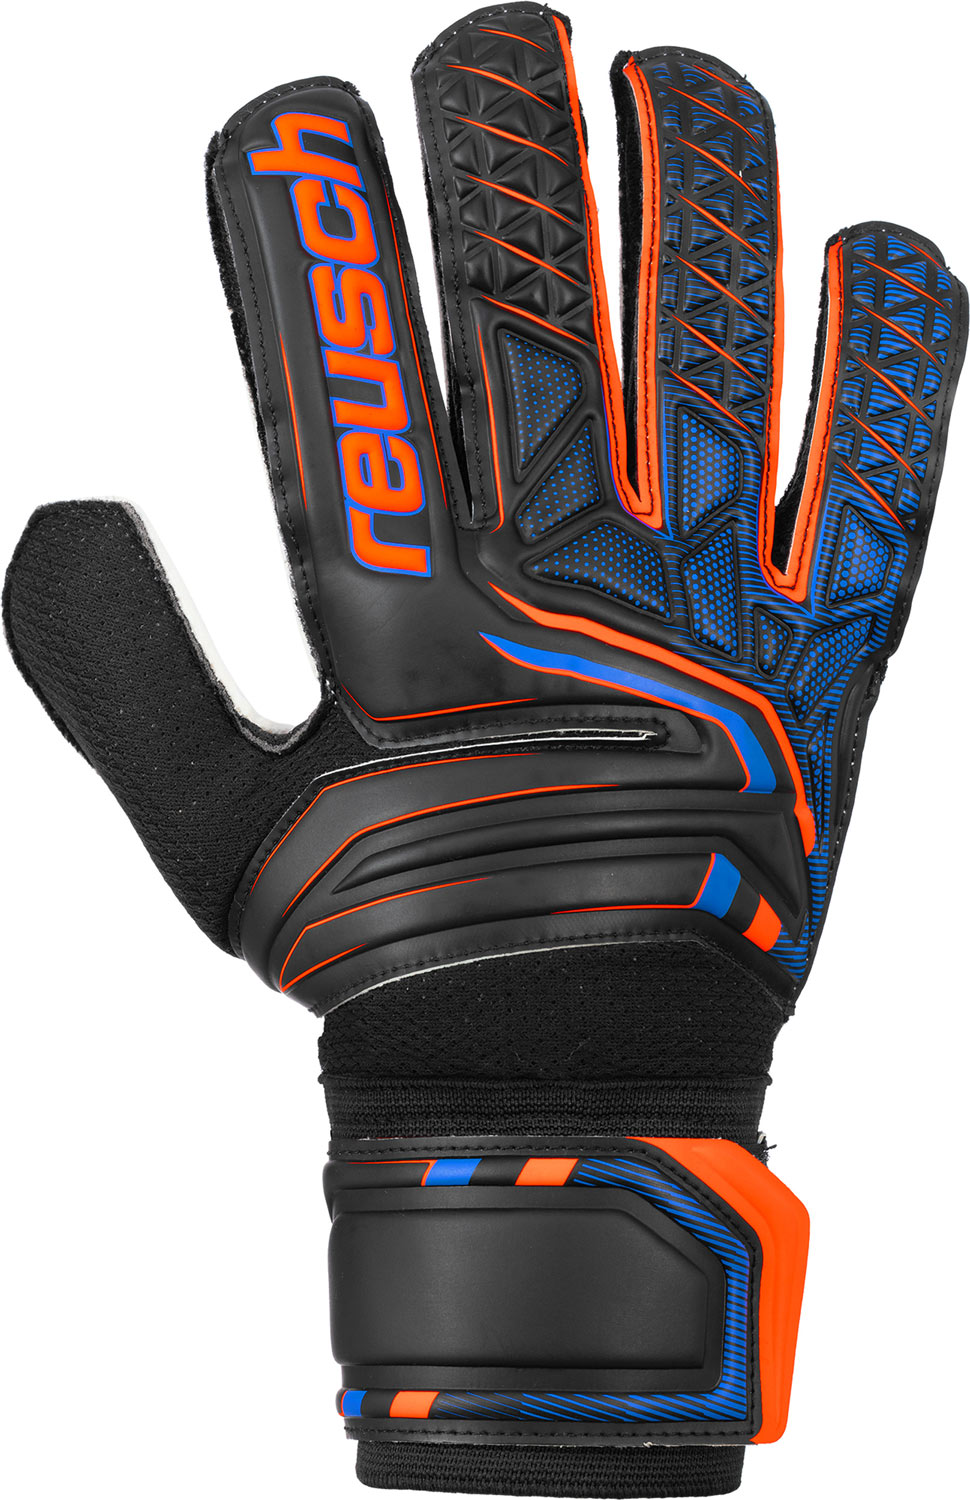 Men’s goalkeeper gloves